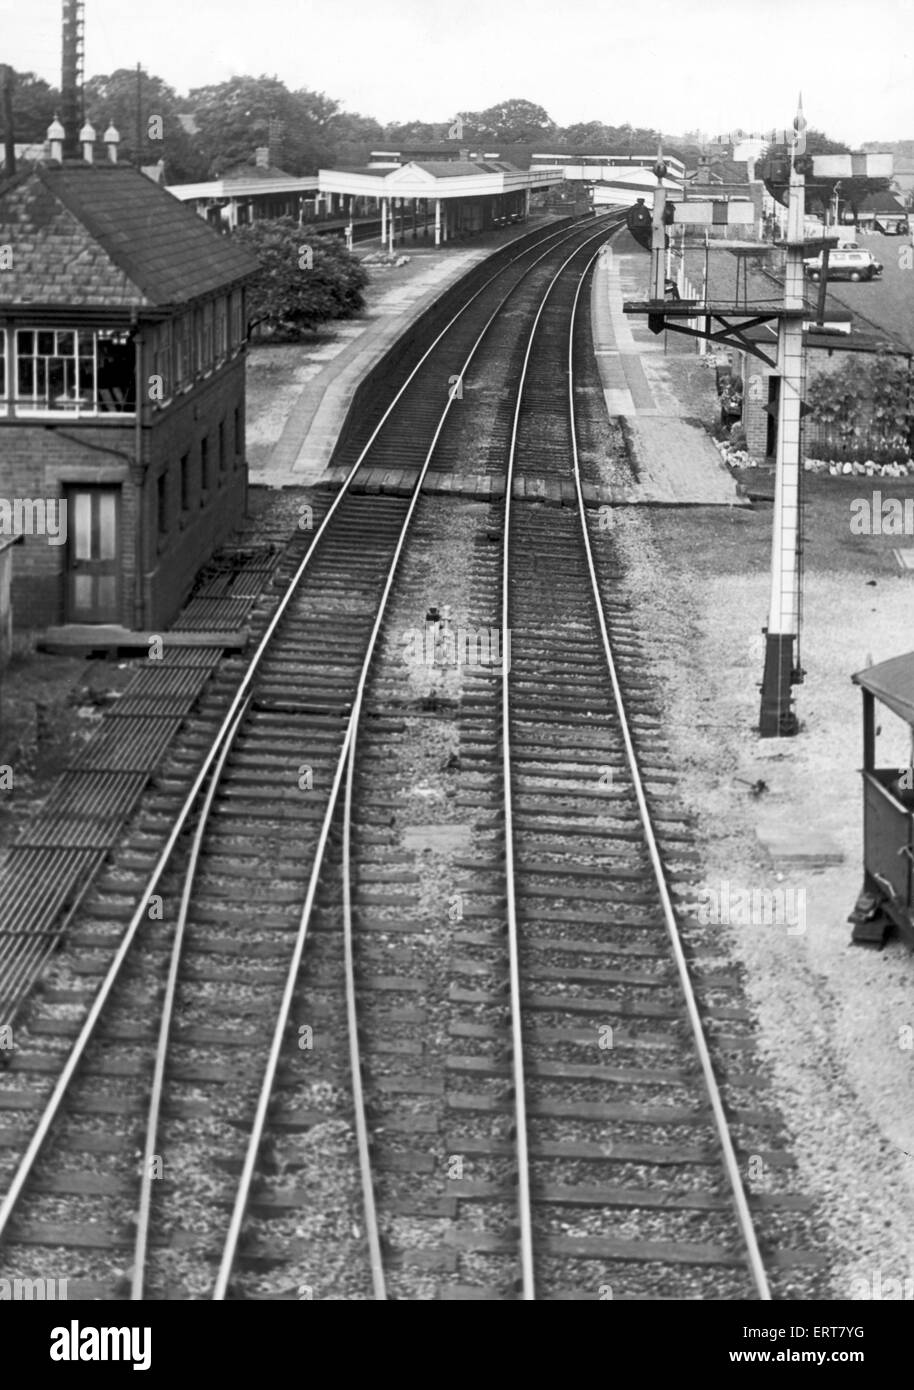 Knowle e Denham incidente ferroviario. Tre persone sono state uccise a Knowle e Denham stazione (ora noto come stazione di Denham) , West Midlands. Una vista dal ponte guardando verso la stazione di Denham. Il Birmingham-Paddington express si avvicinò a lungo la linea destra del doppio binario nel centro dell'immagine e la collisione con il treno merci ha avuto luogo sotto il ponte. Il 23 agosto 1963. Foto Stock